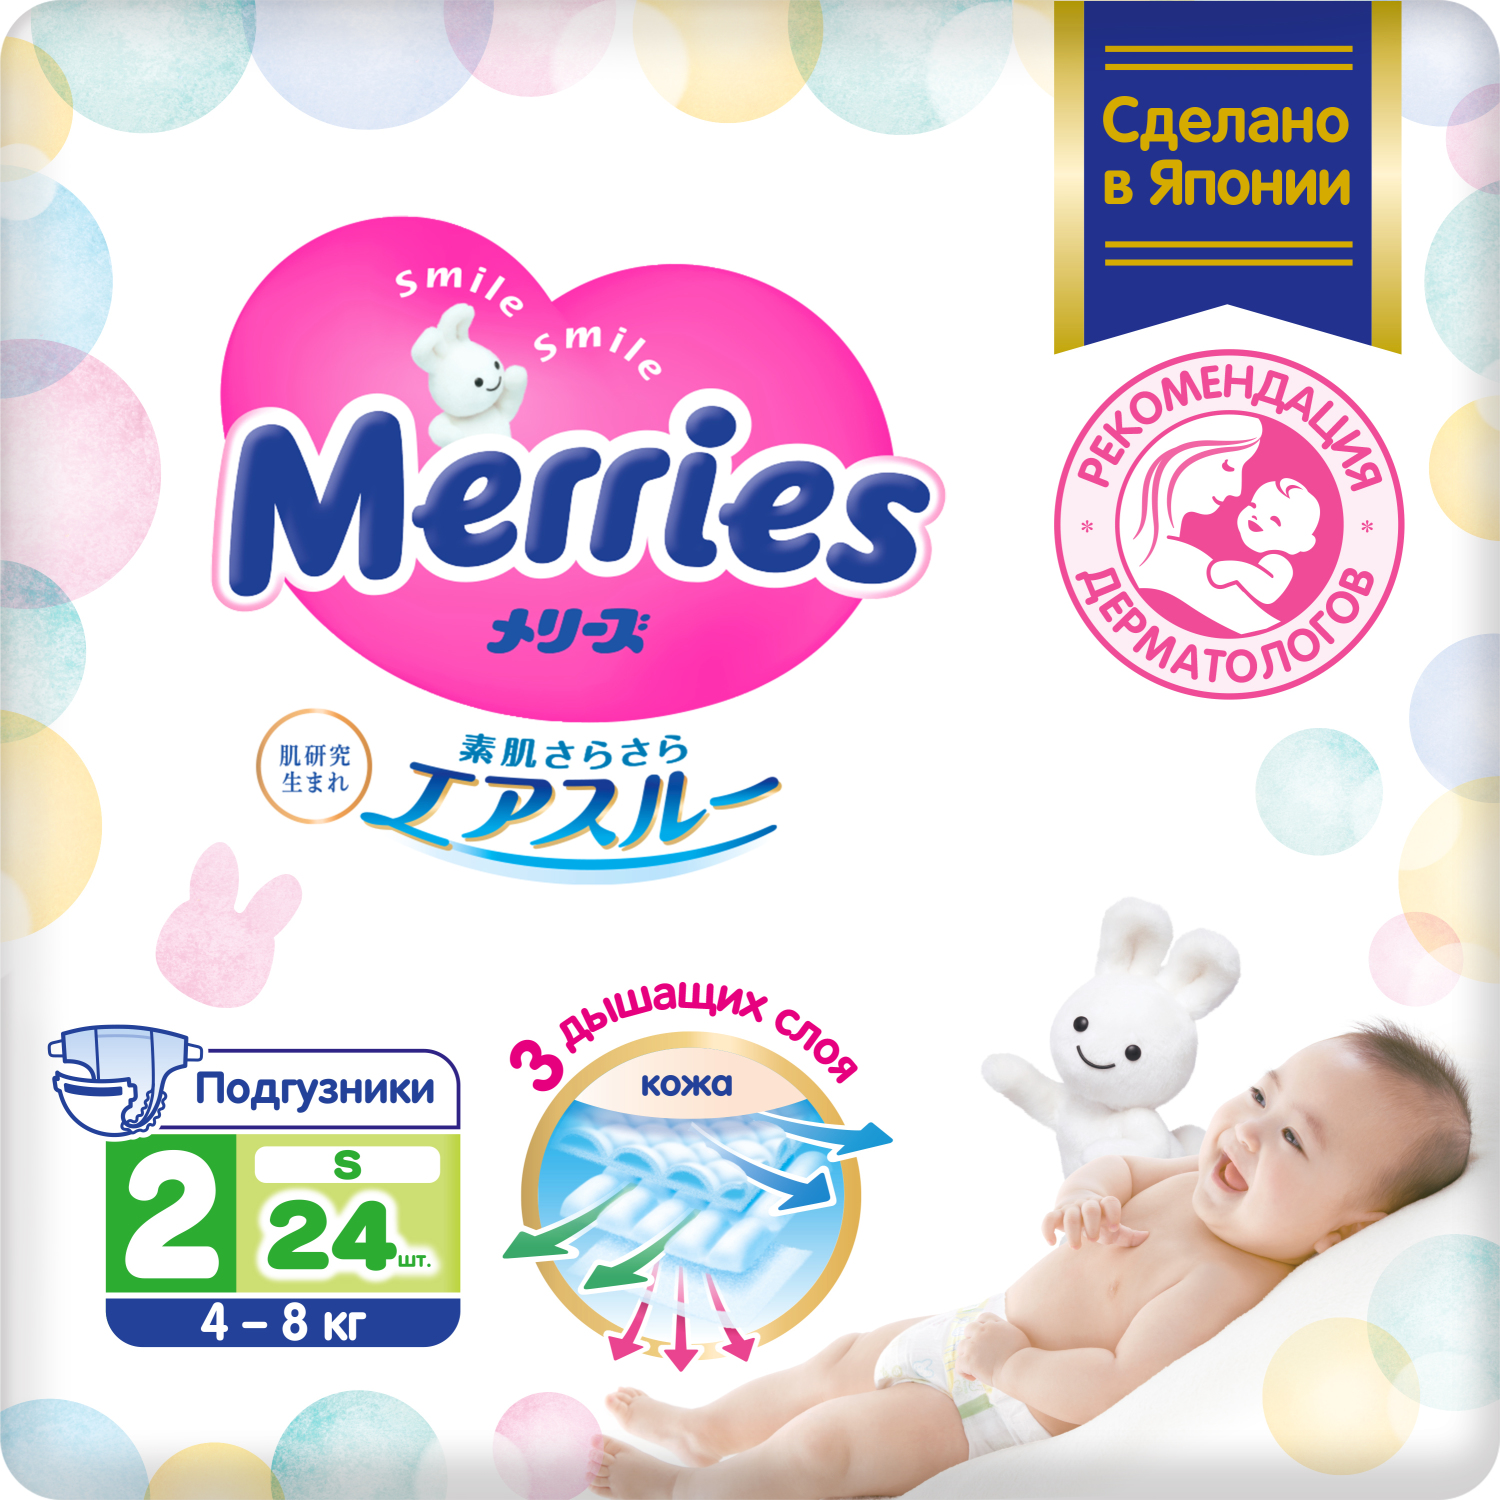 цена Подгузники Merries для детей размер S 4-8 кг 24 шт